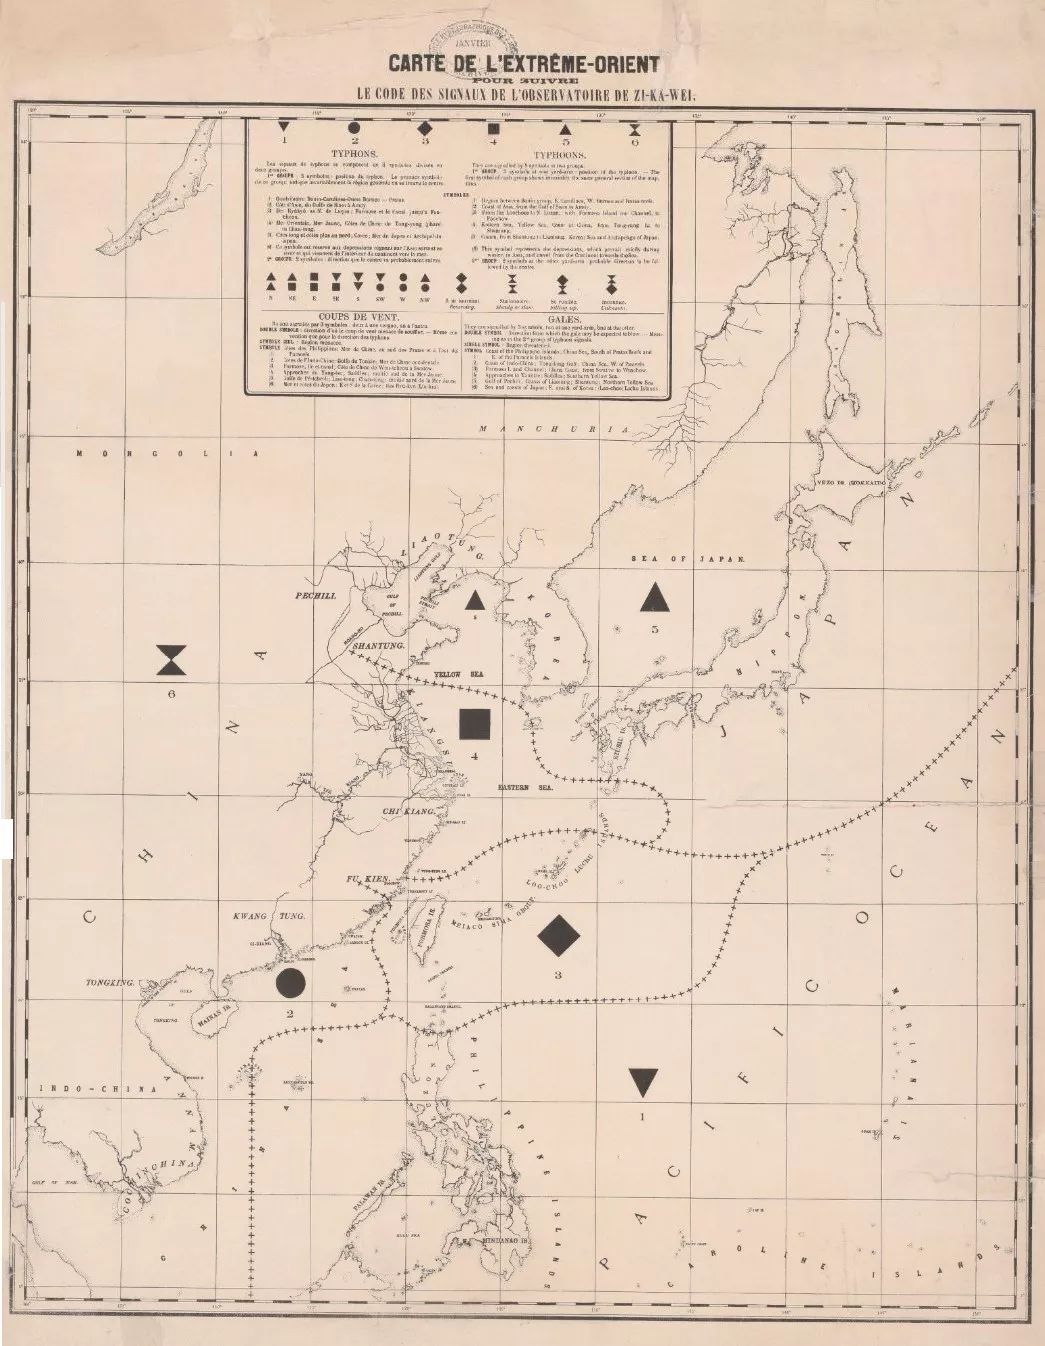 徐家汇观象台早期绘制的中国沿海台风记录图。